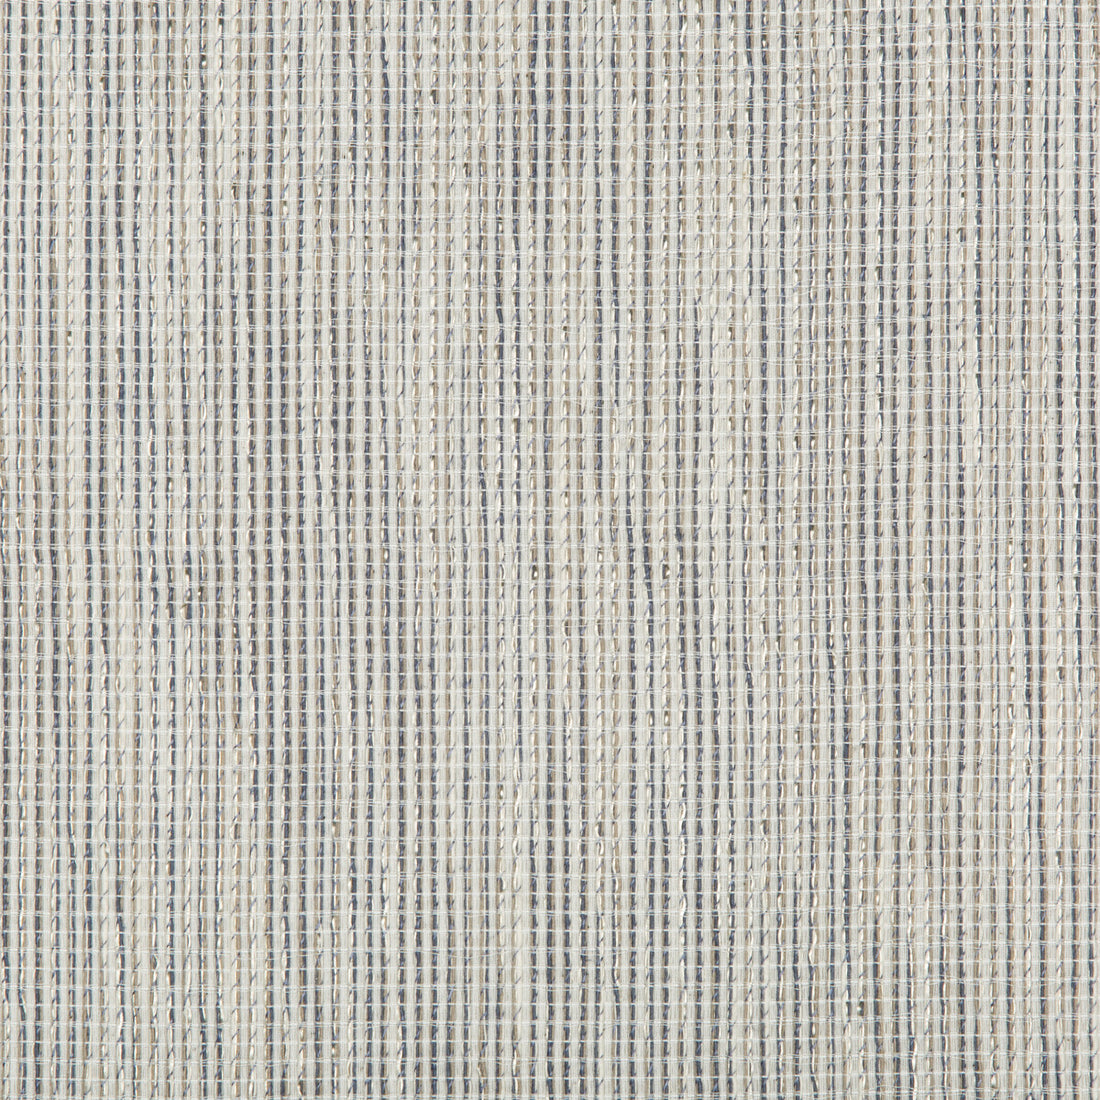 Kravet Design fabric in 4594-511 color - pattern 4594.511.0 - by Kravet Design